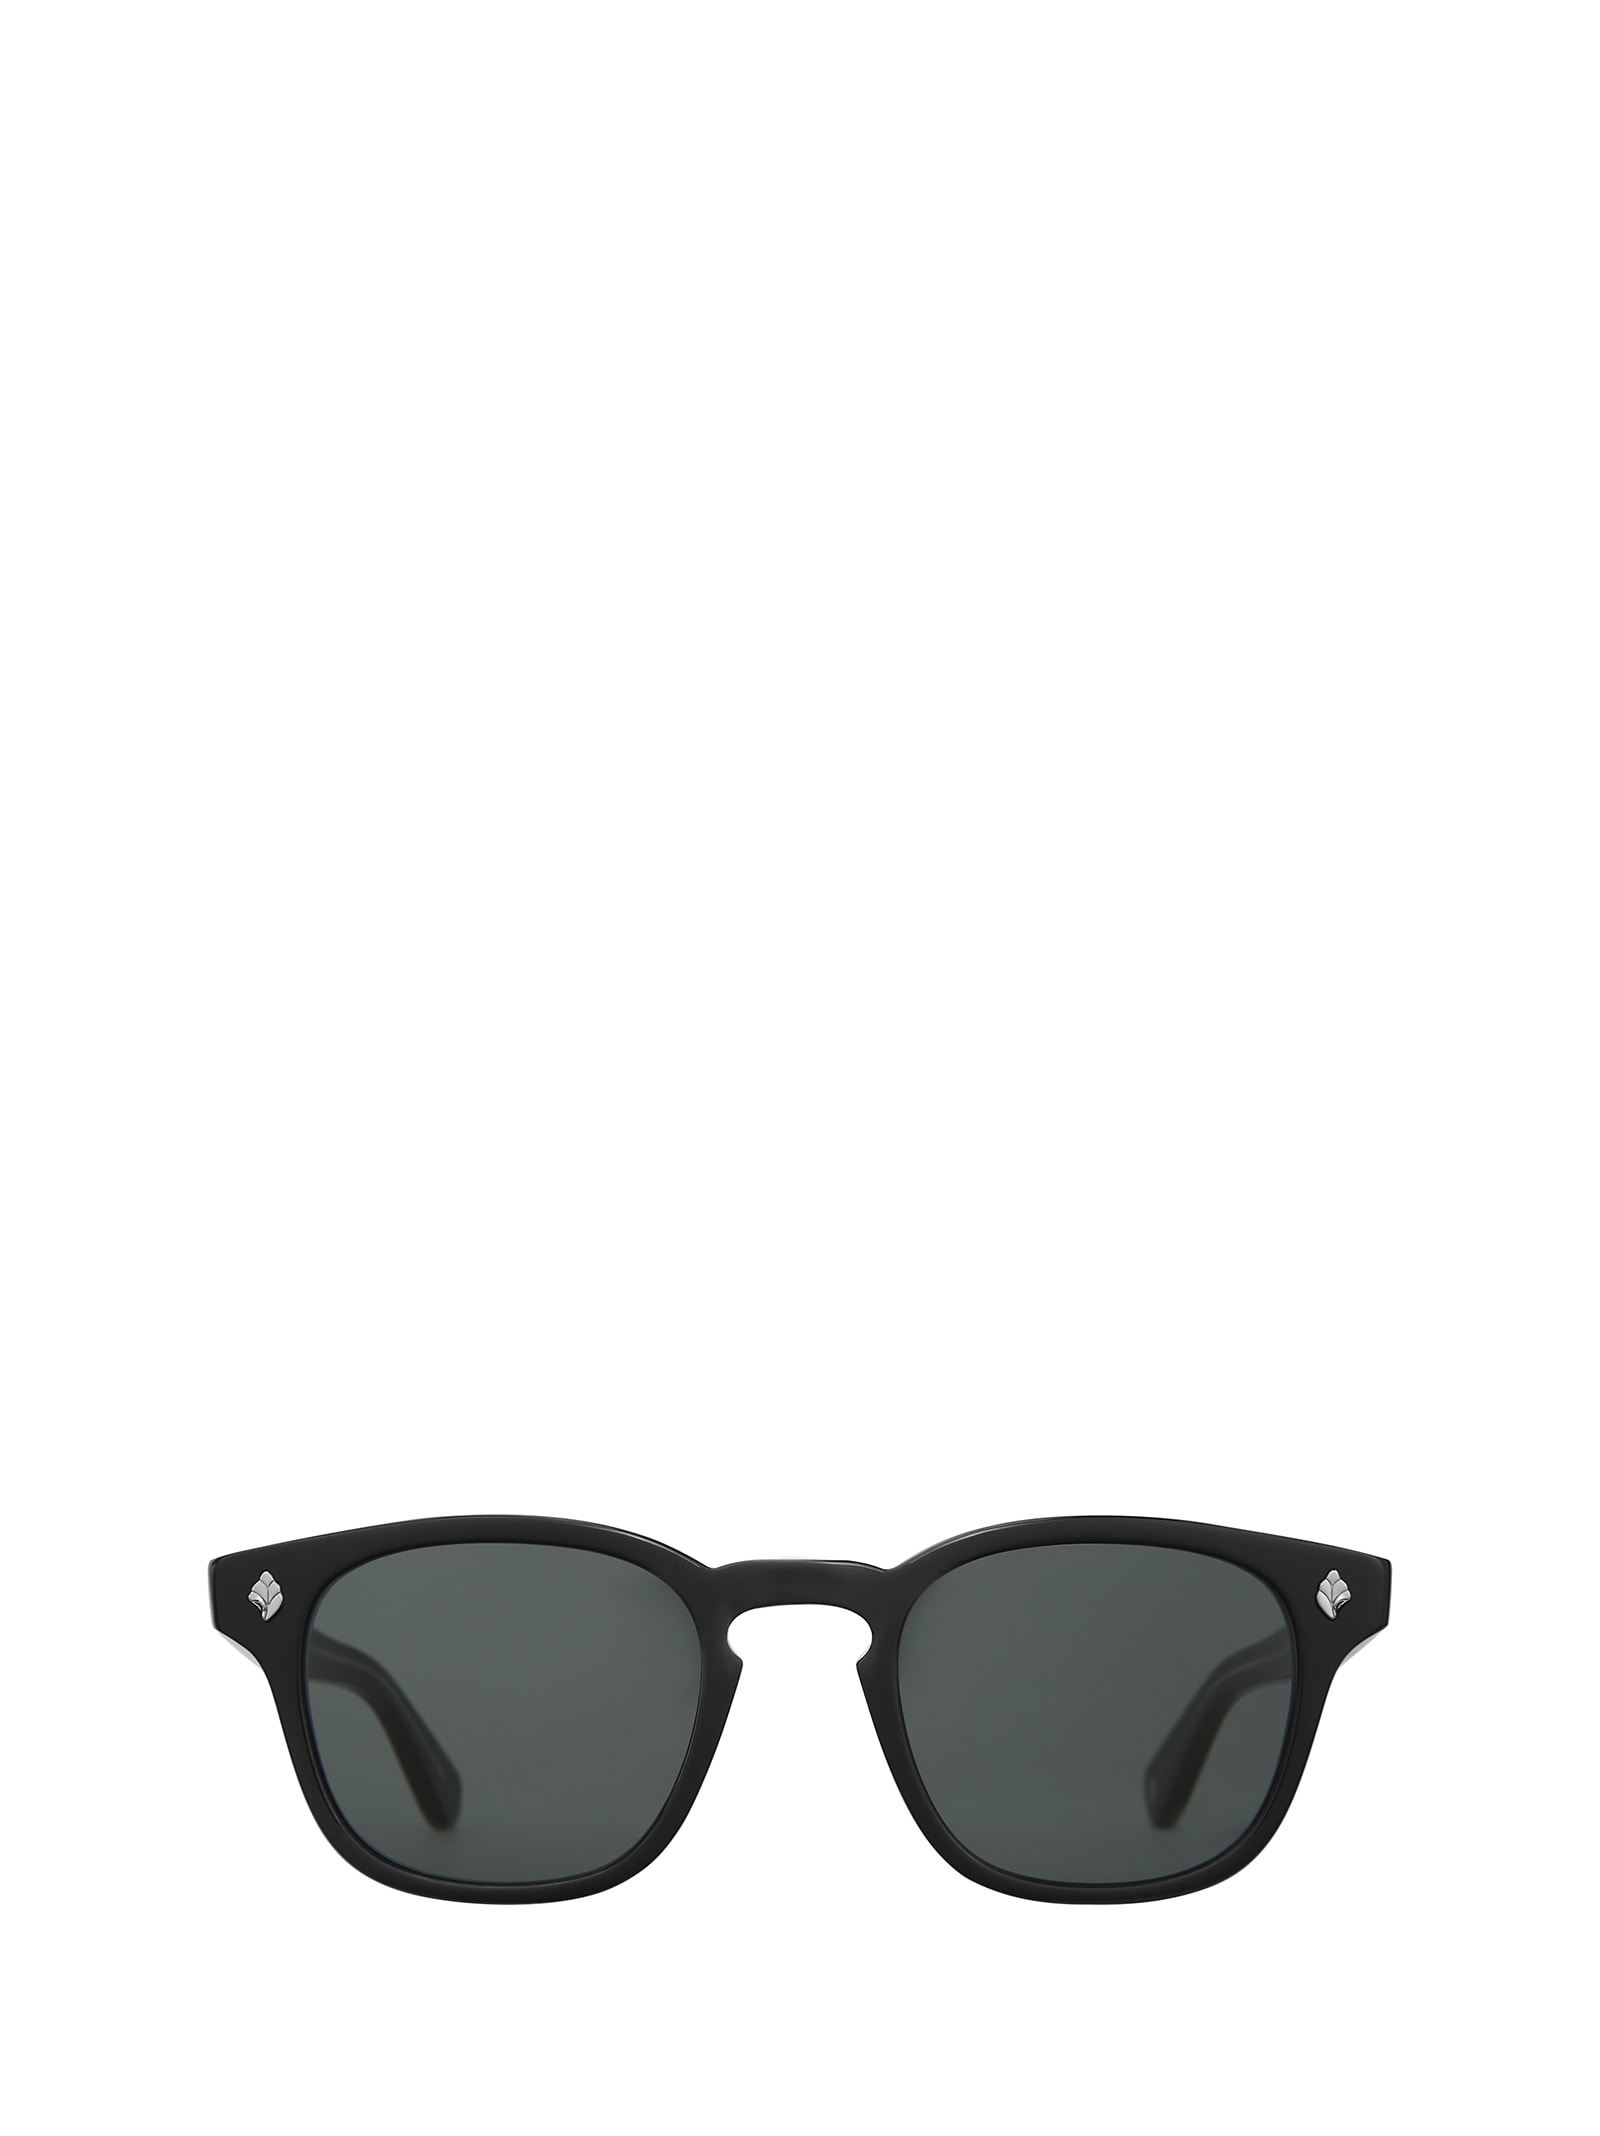 Ace Sun Black Sunglasses